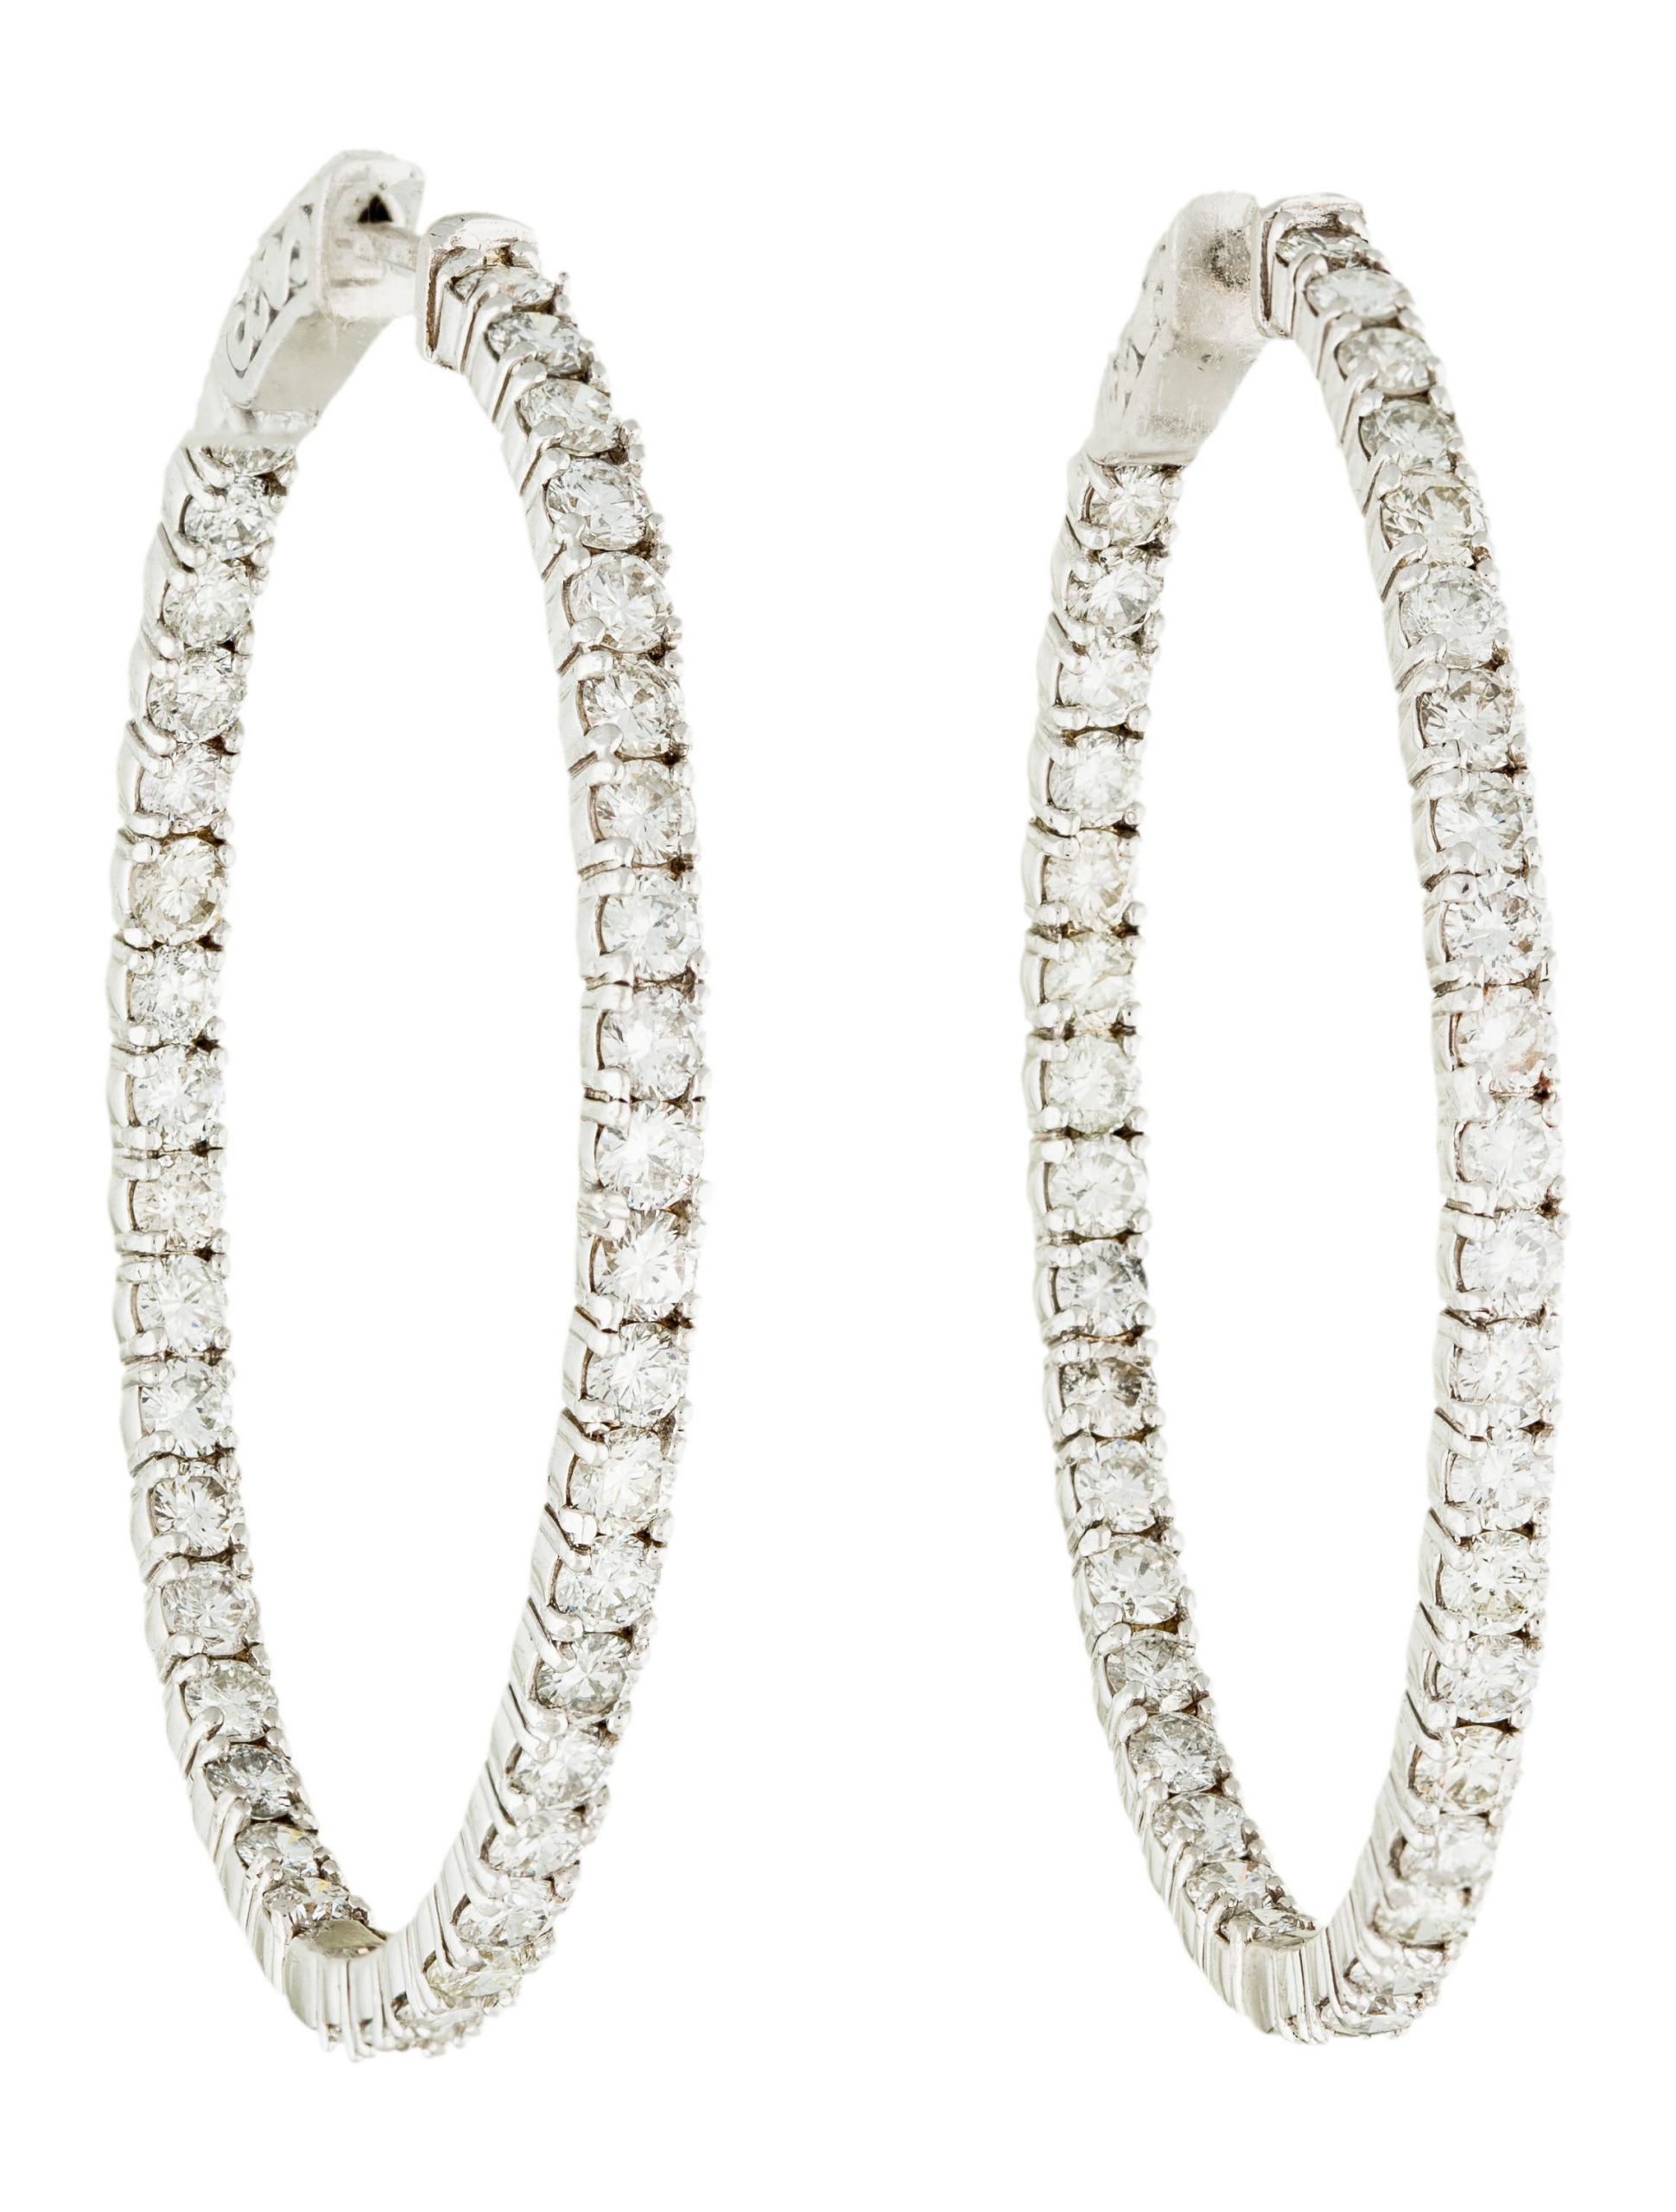 Inside Out Diamond Hoop Earrings
 Earrings 14K Diamond Inside Out Oval Hoop Earrings